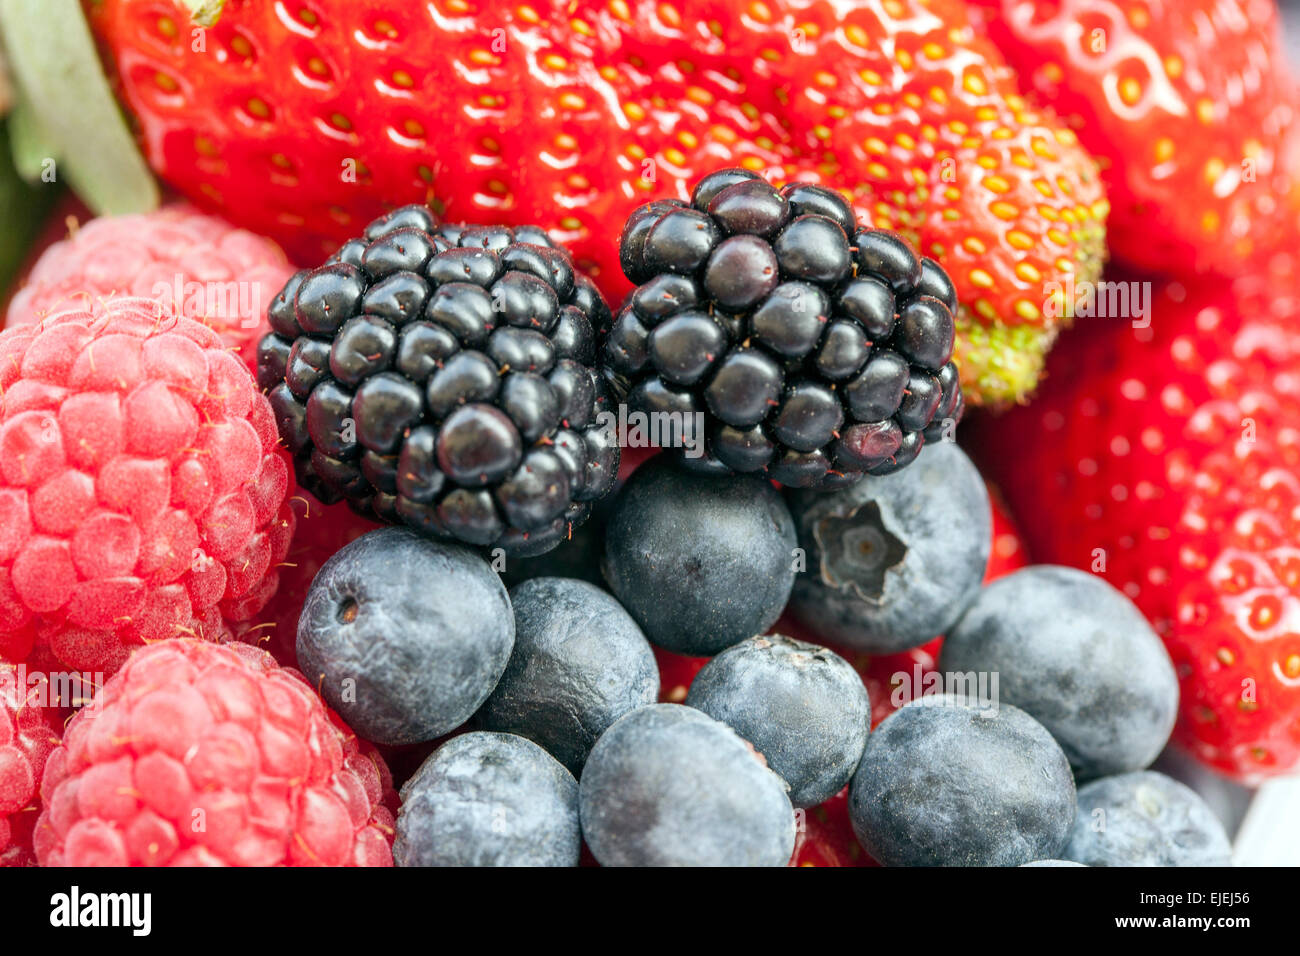 Texture des fruits, mûres, framboises, fraises, bleuets fruits baies Banque D'Images